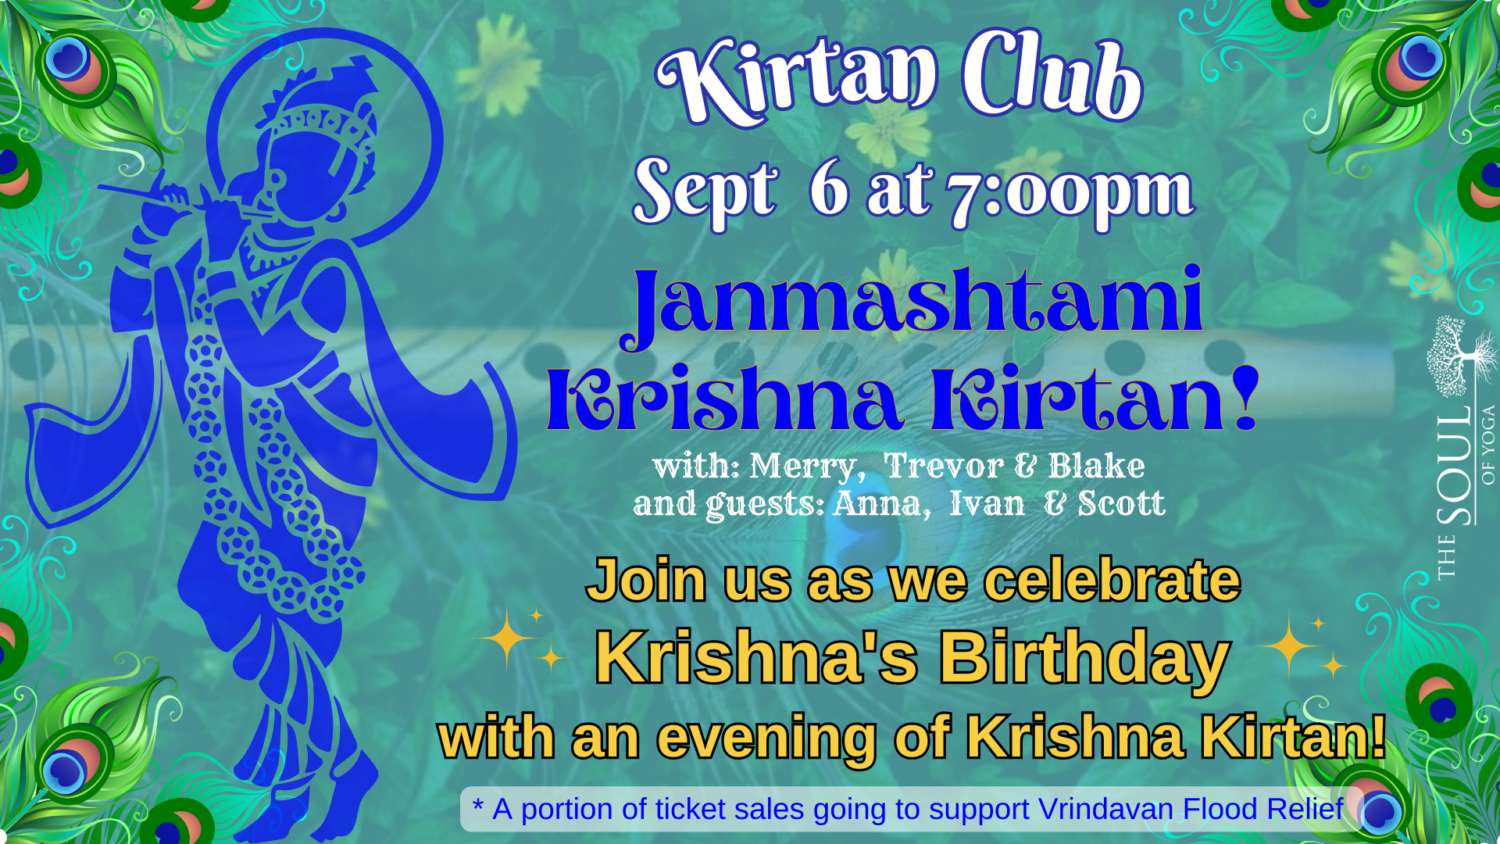 Krishna's Birthday Kirtan Club - Janmashtami! Fundraiser